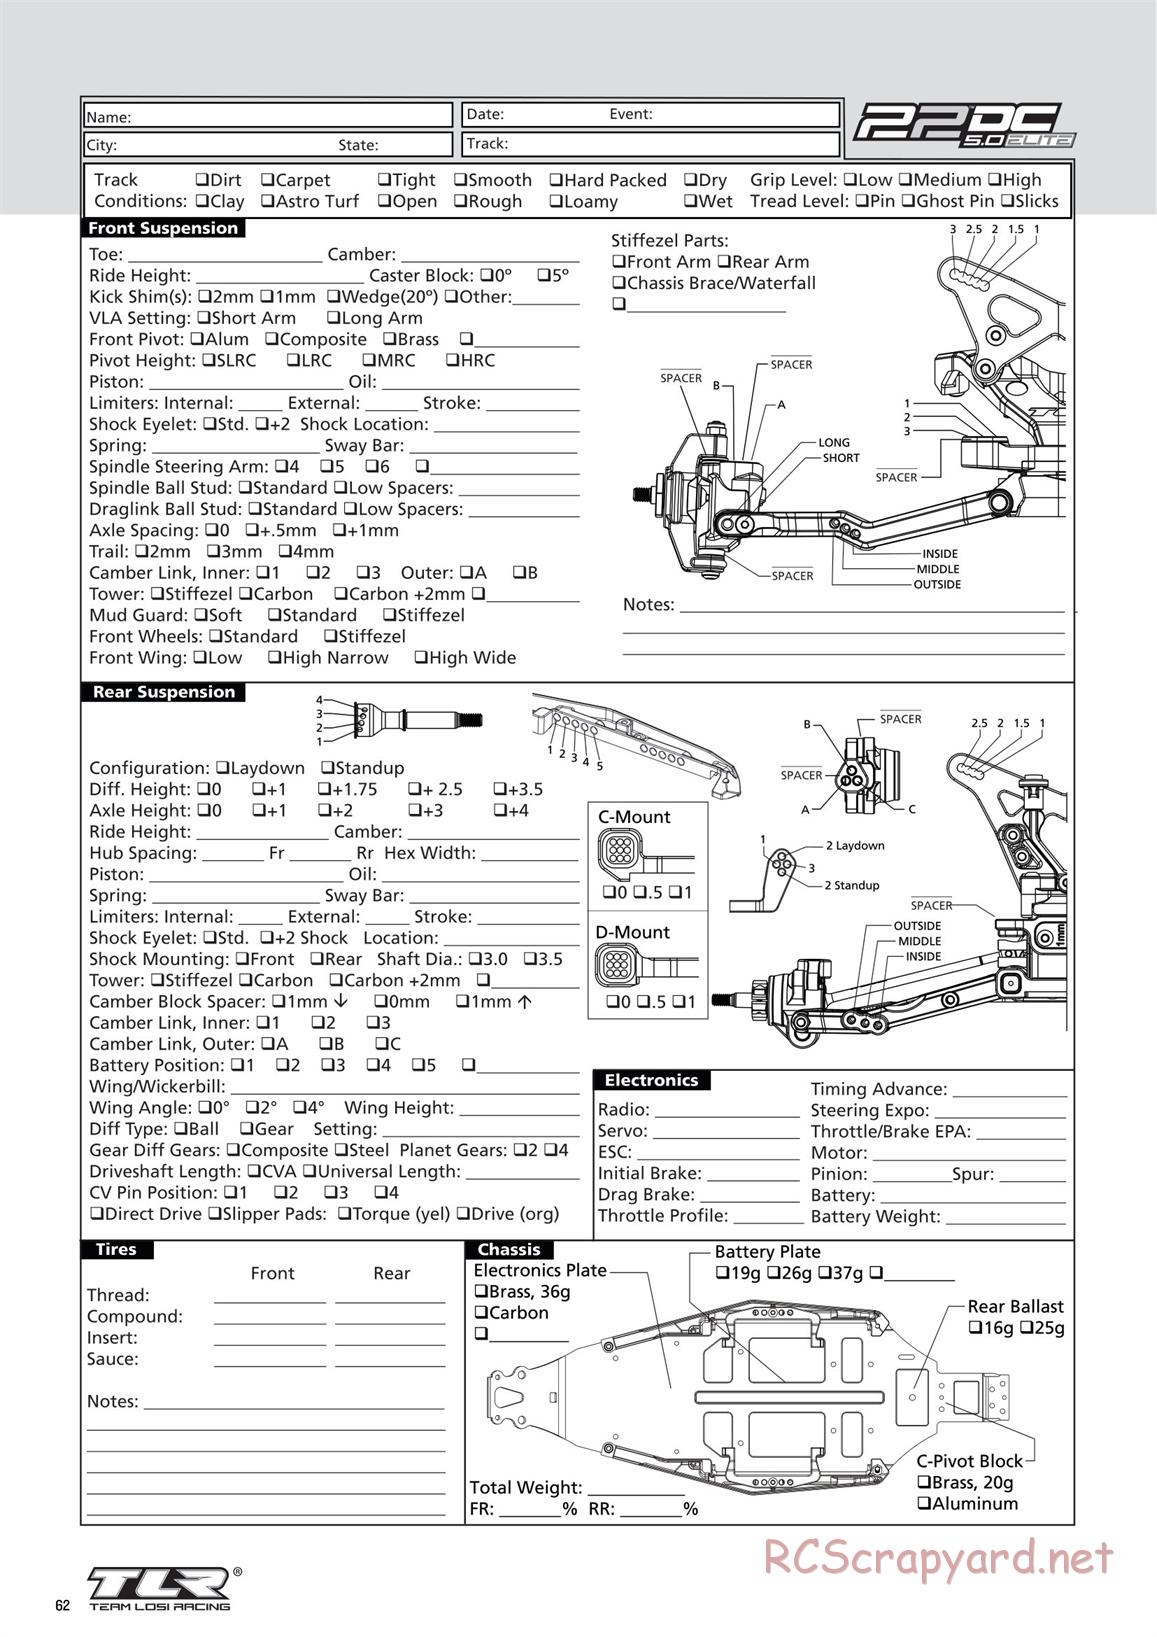 Team Losi - TLR 22 5.0 DC Elite Race - Manual - Page 62